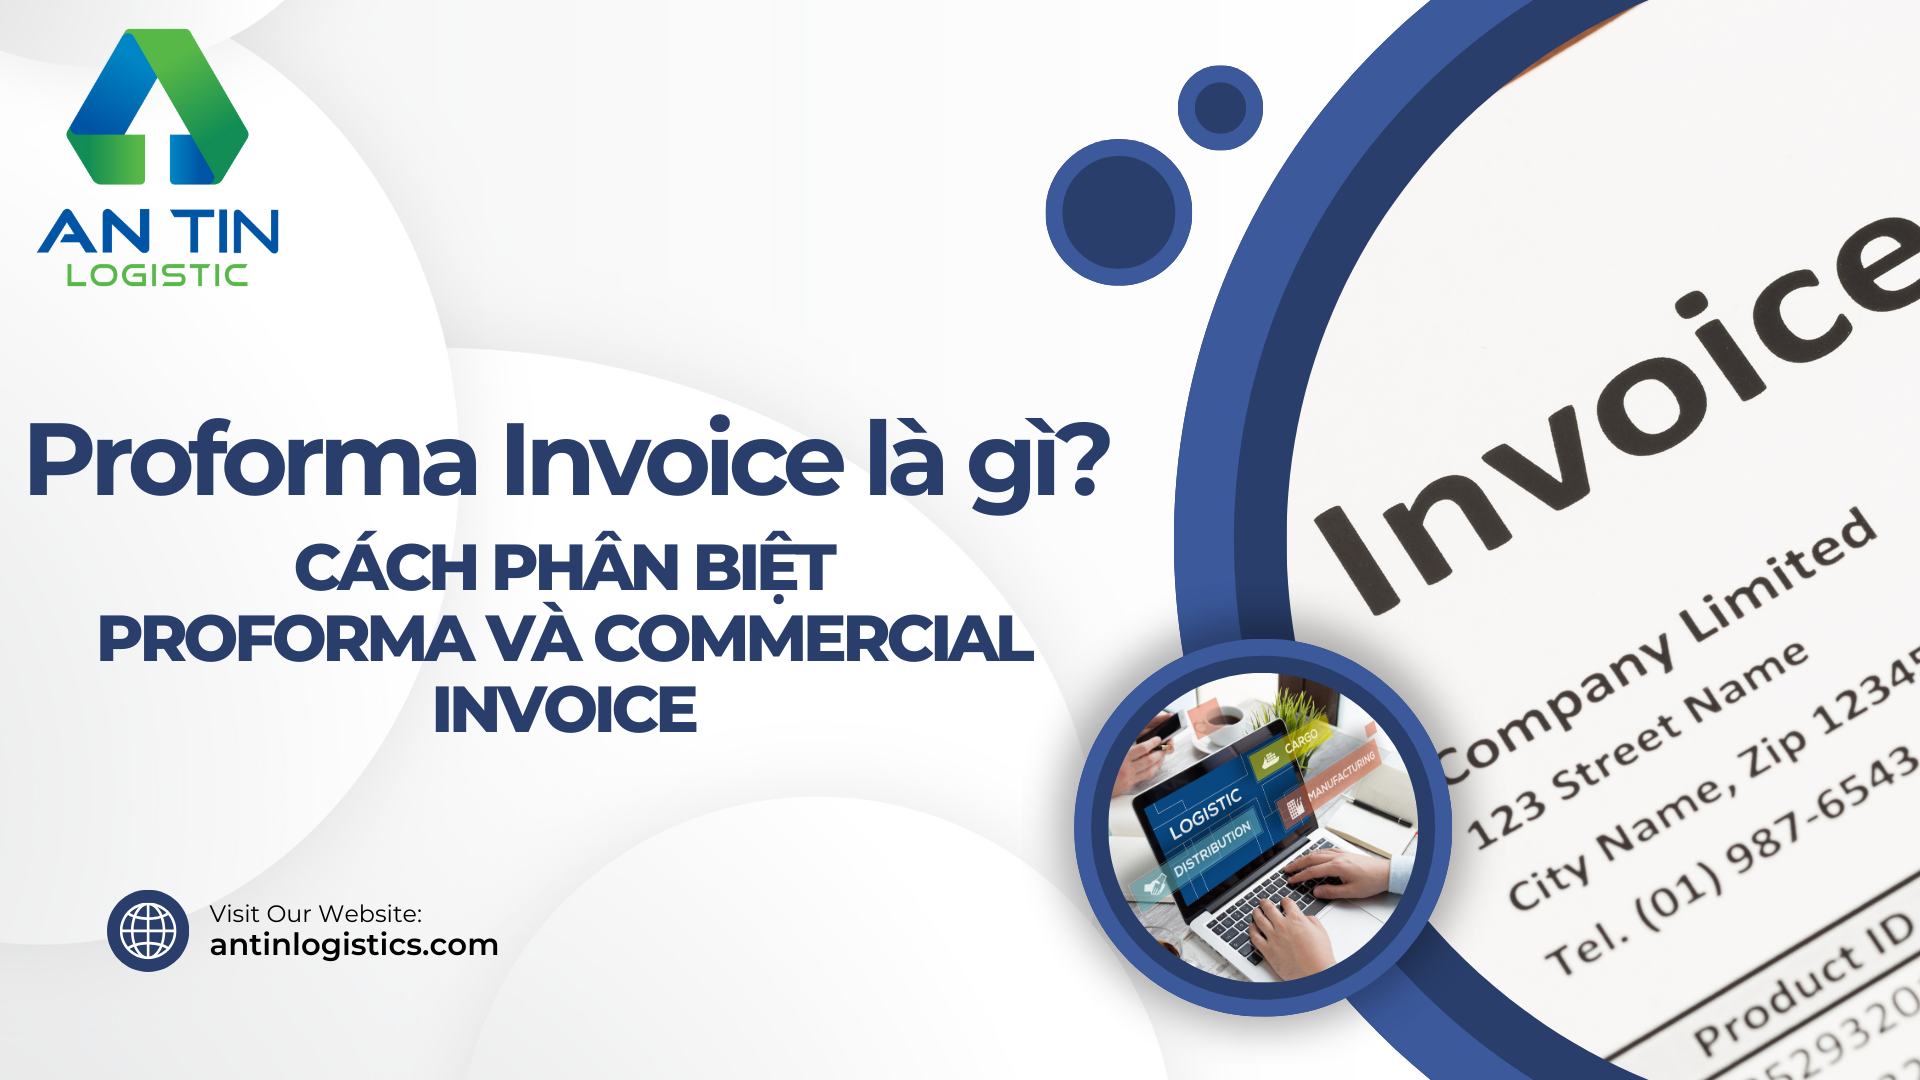 Proforma Invoice là gì?